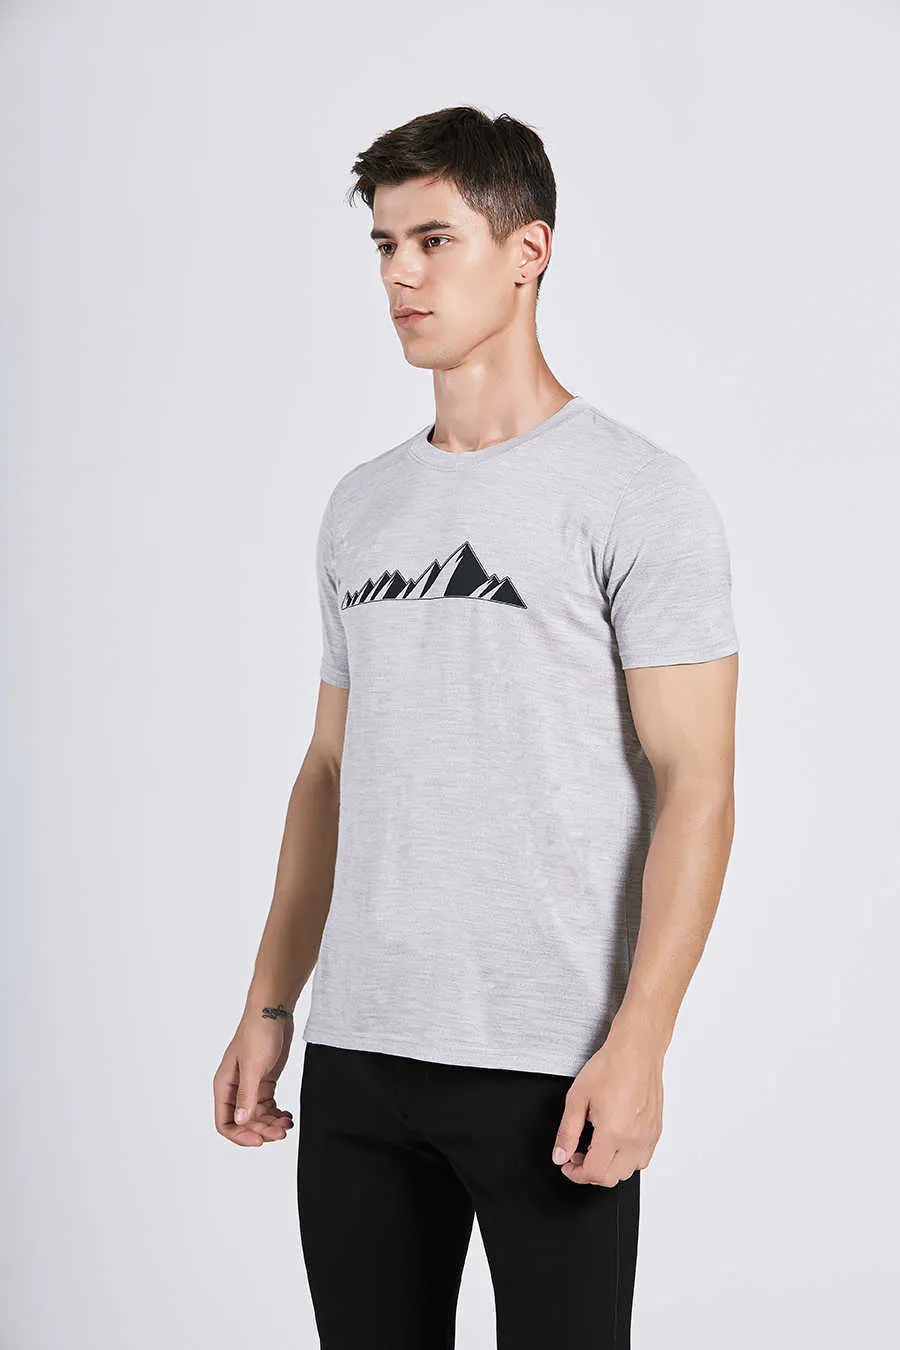 Mannen Merino Wol T-shirt 100% Shirts Zachte Sneldrogende Vocht Wicking Geur Weerstand Size S-XL 170G 210714